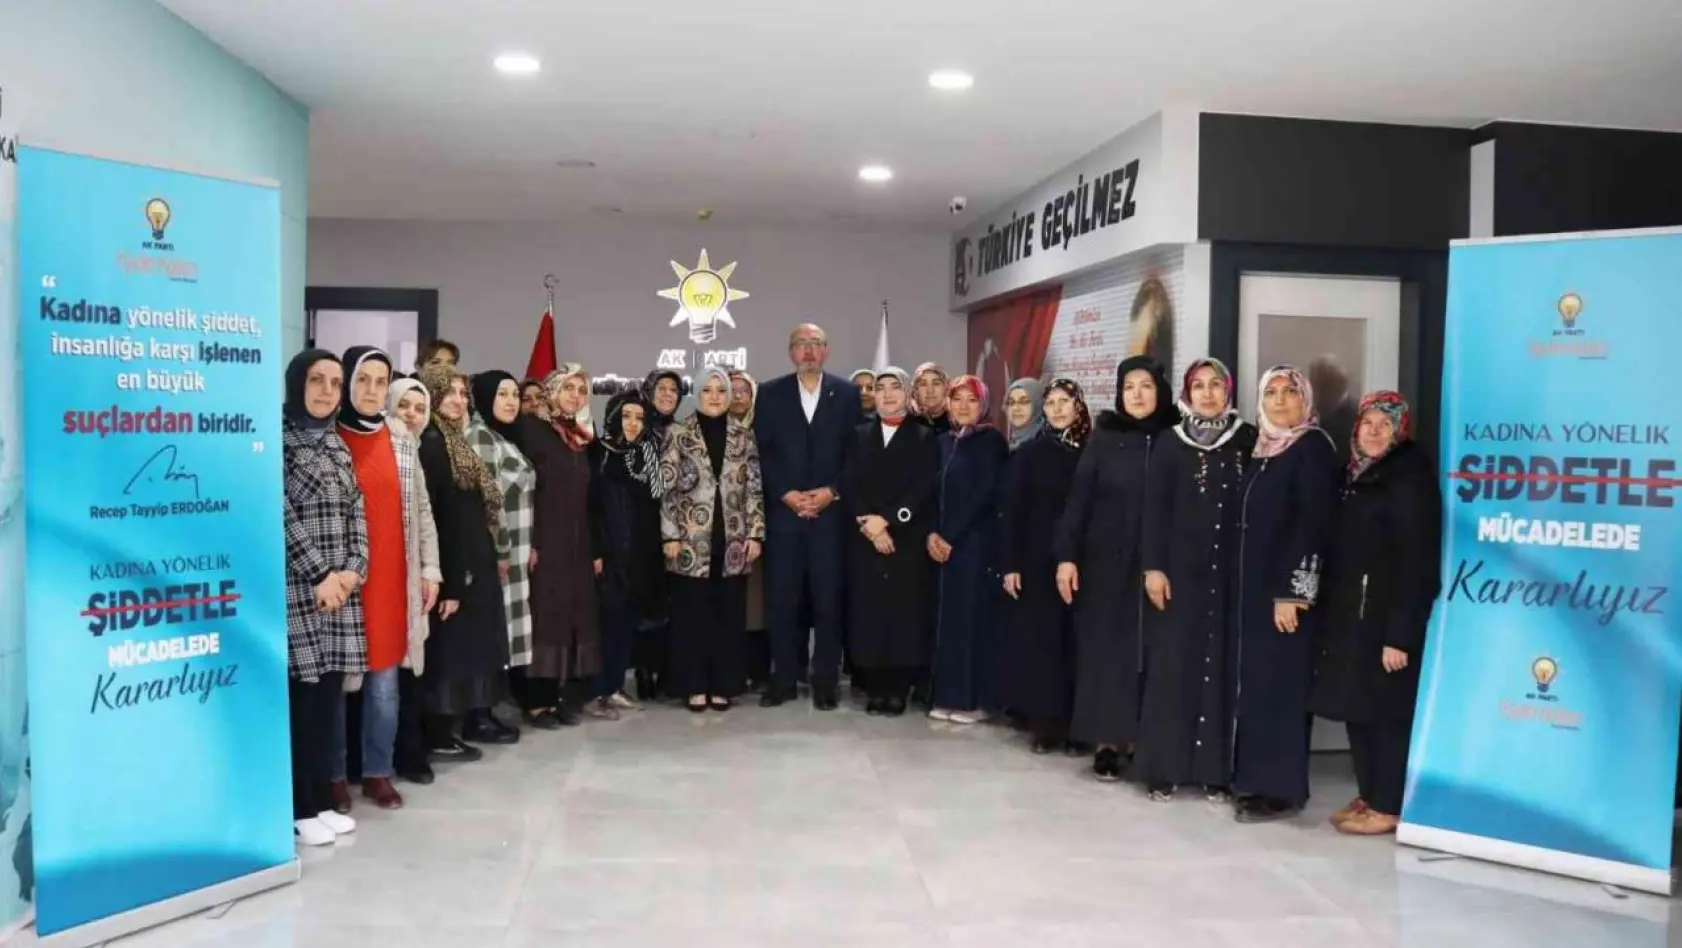 Esra Özbek Balcı: 'Kadına yönelik şiddetle mücadelede kararlıyız'